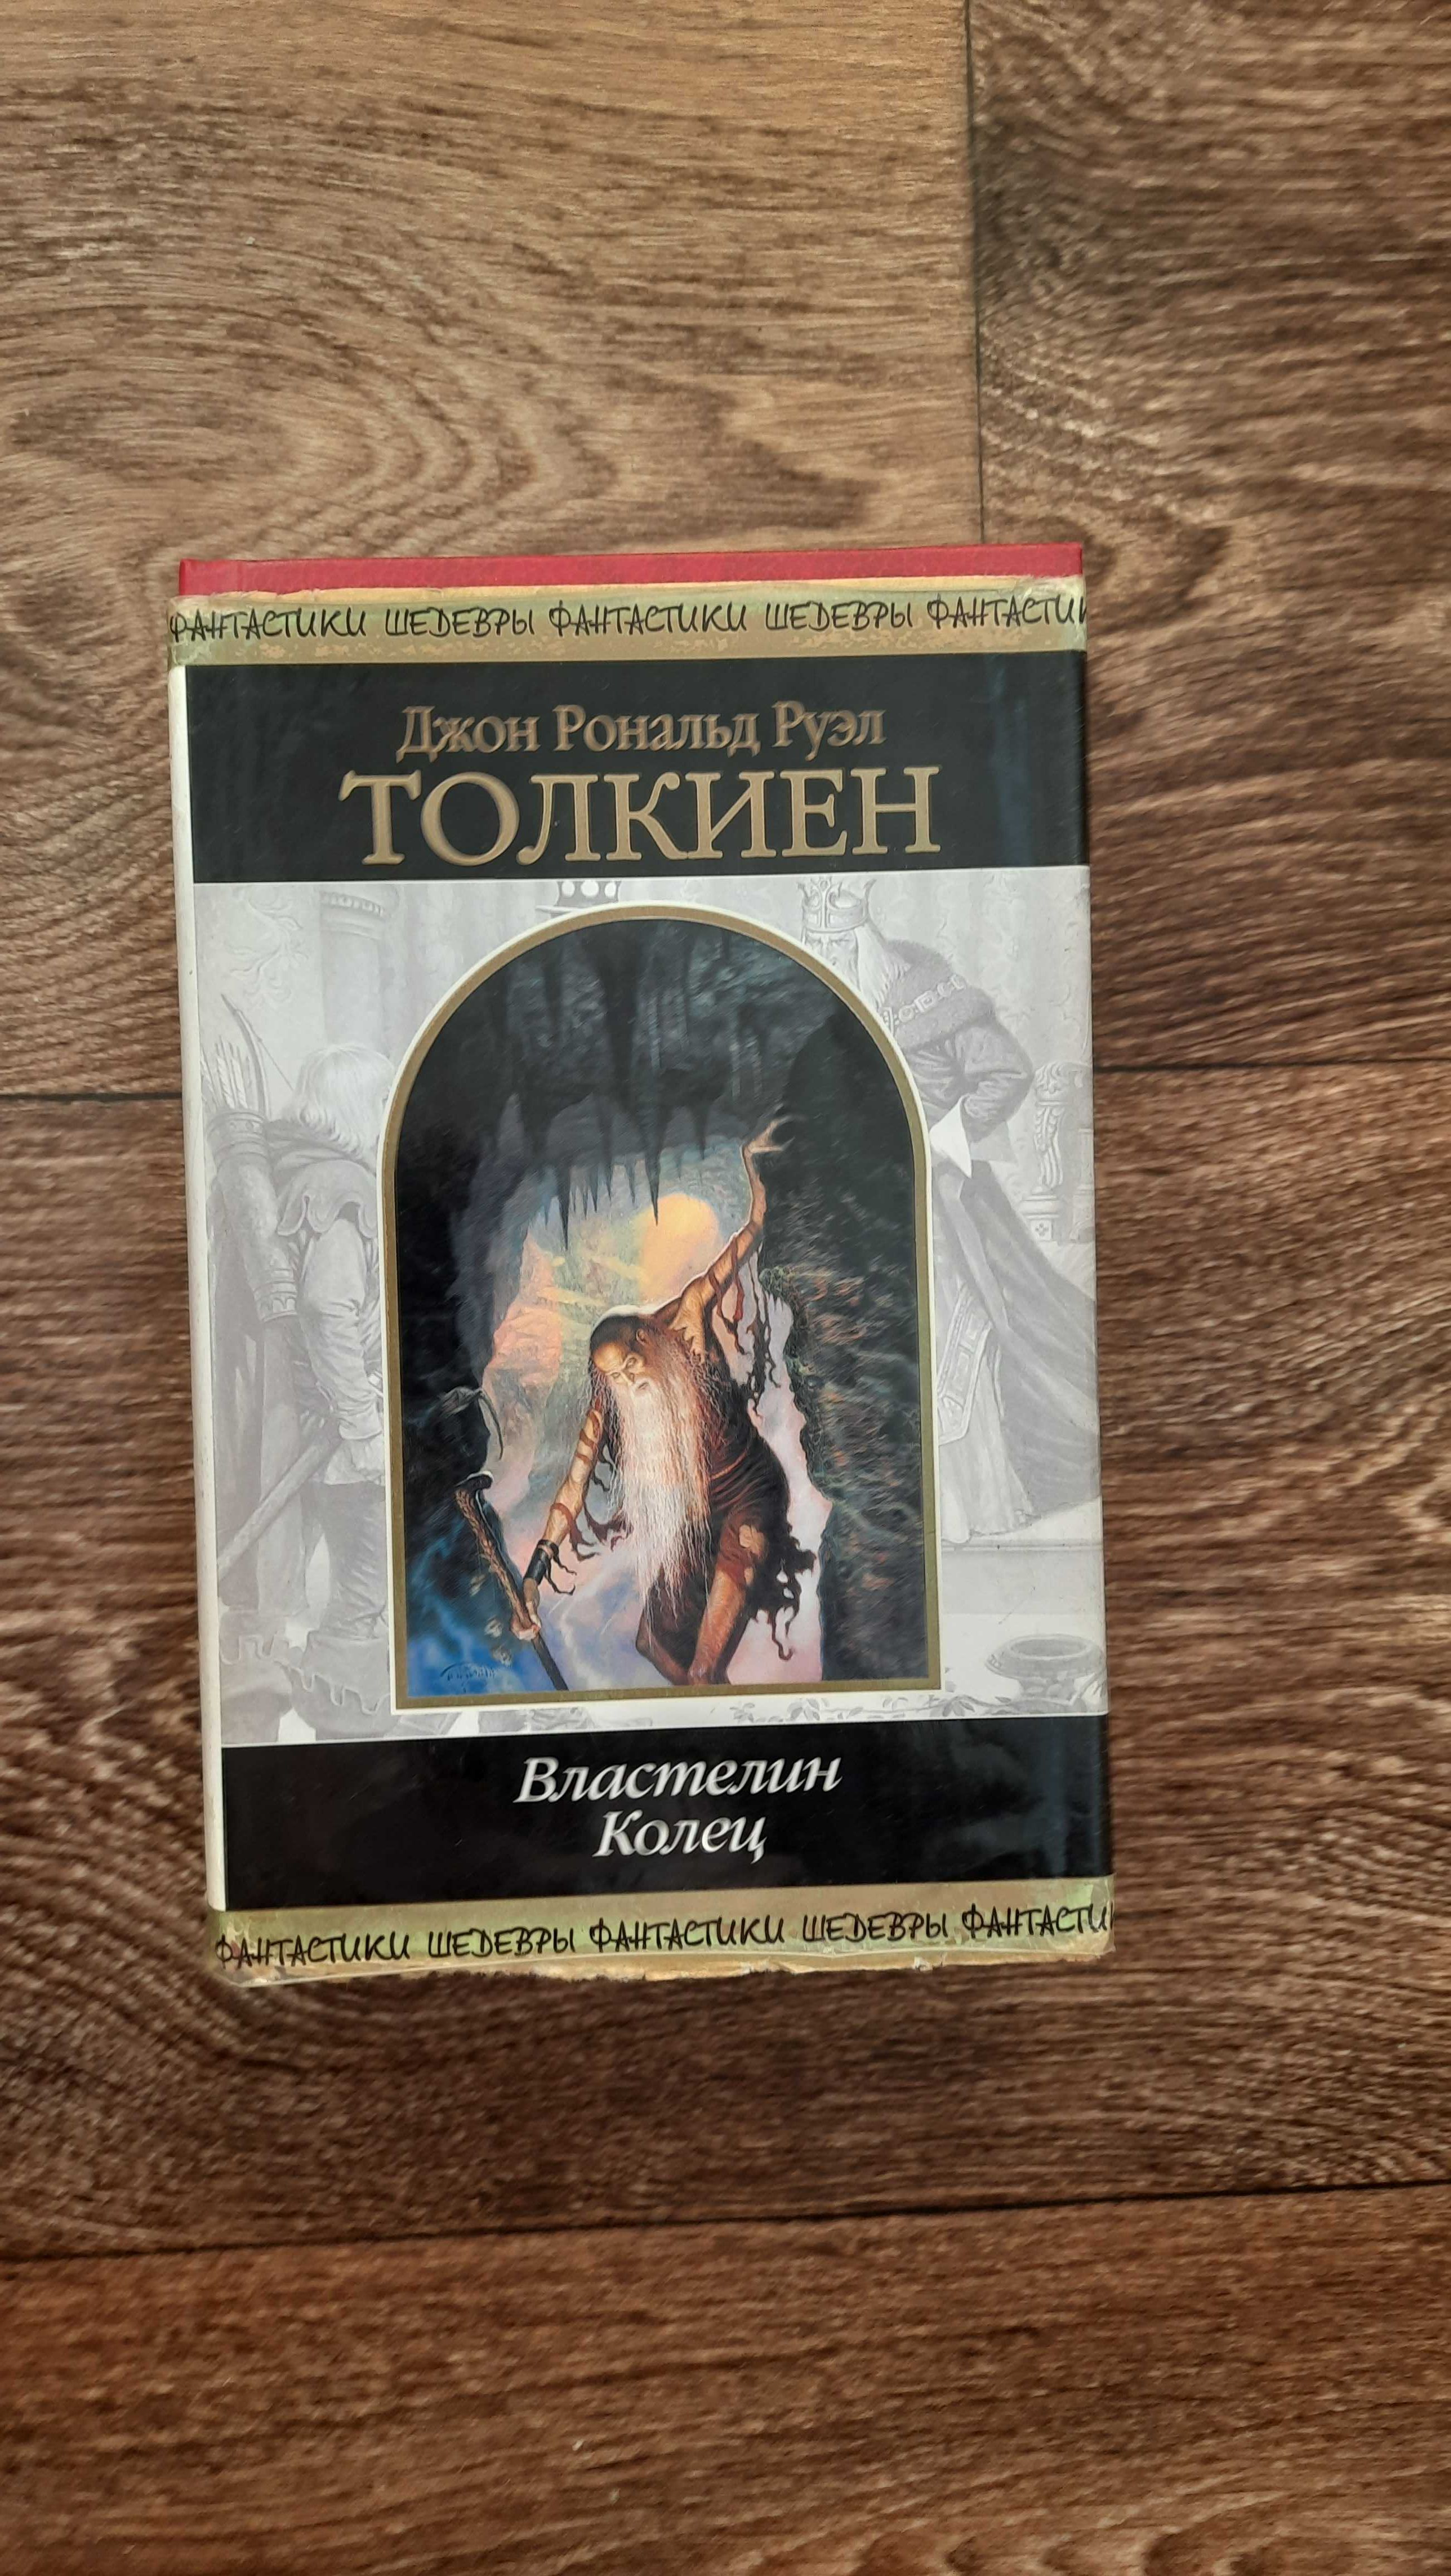 Трилогия Толкина "Властелин колец" в одной книге